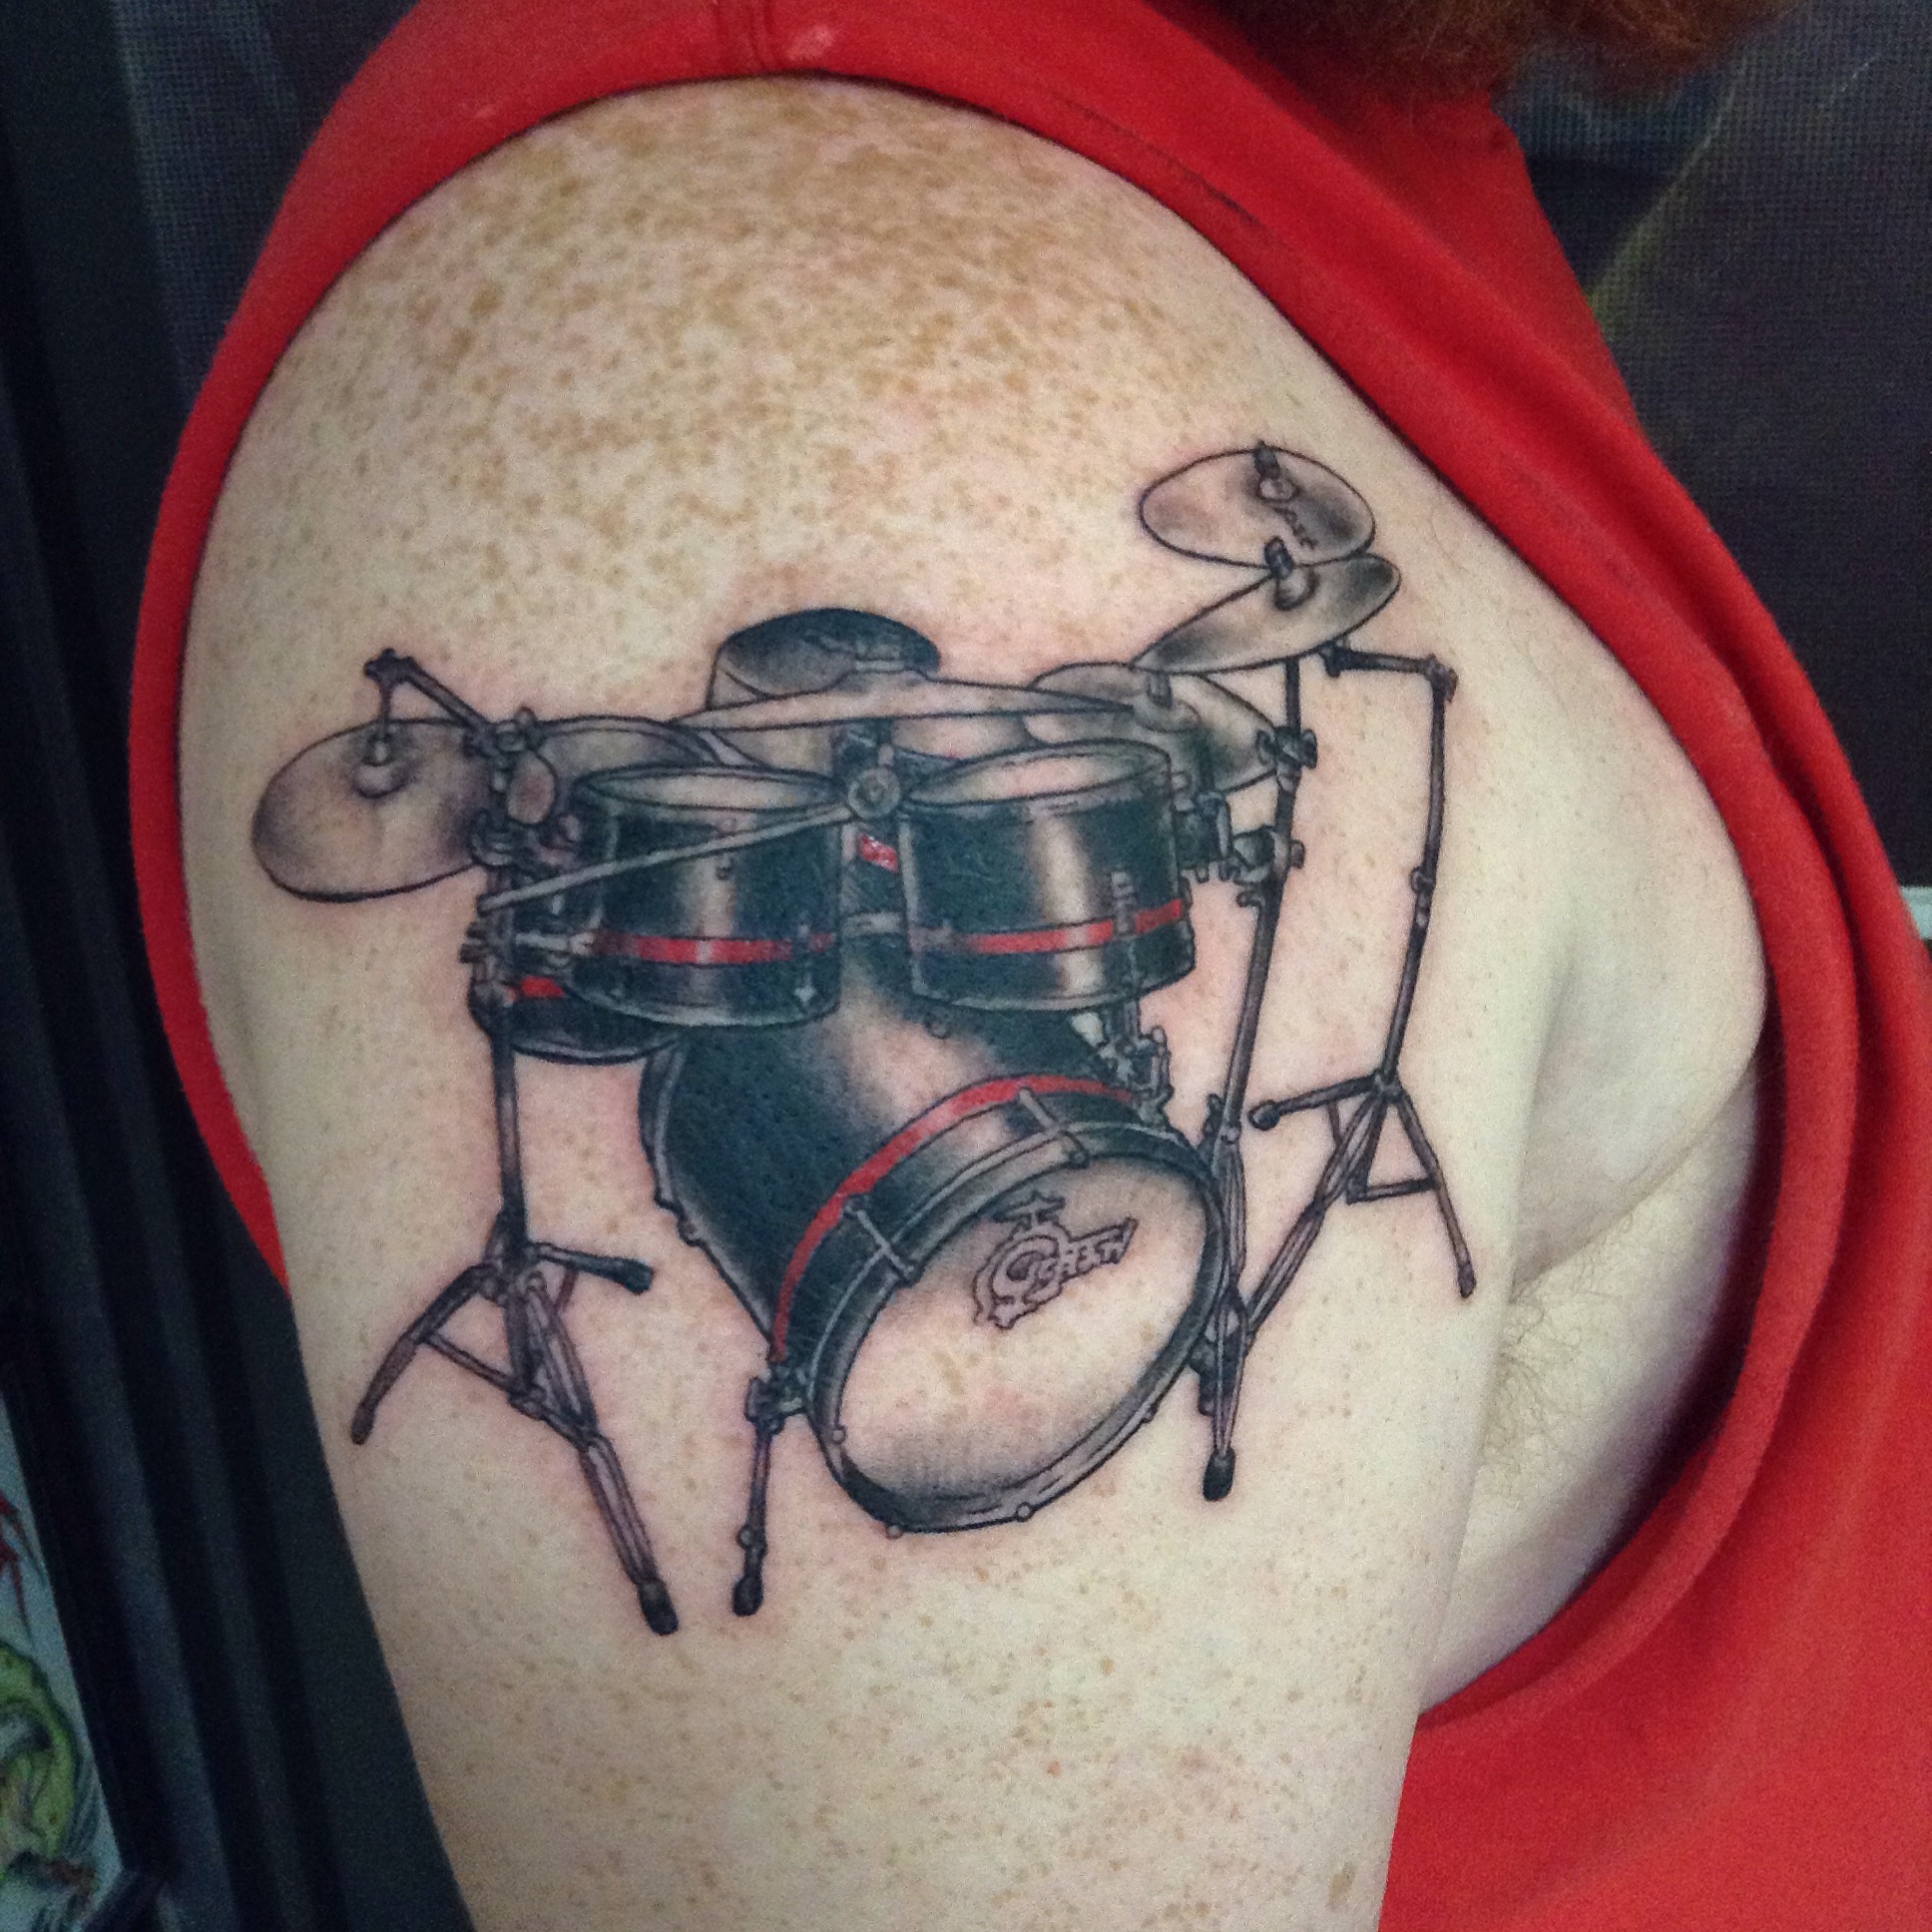 CRYPTOSTART on Twitter One of the best drum tattoos drums drummer  beginnerdrummer tattoo drummertattoo httpstcoUM9uYjYy1w  Twitter